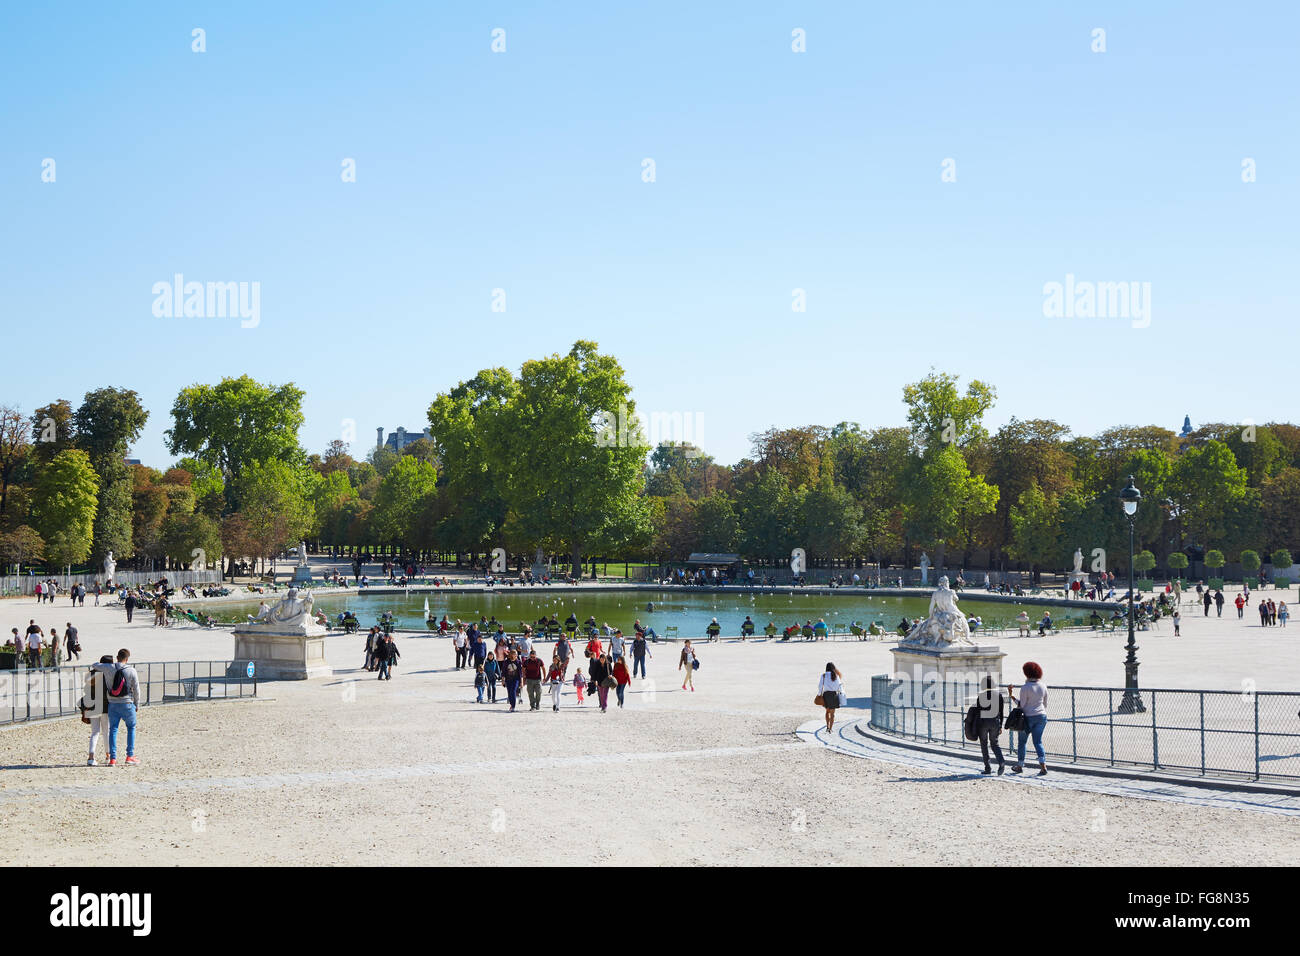 People in famous Tuileries garden in Paris Stock Photo